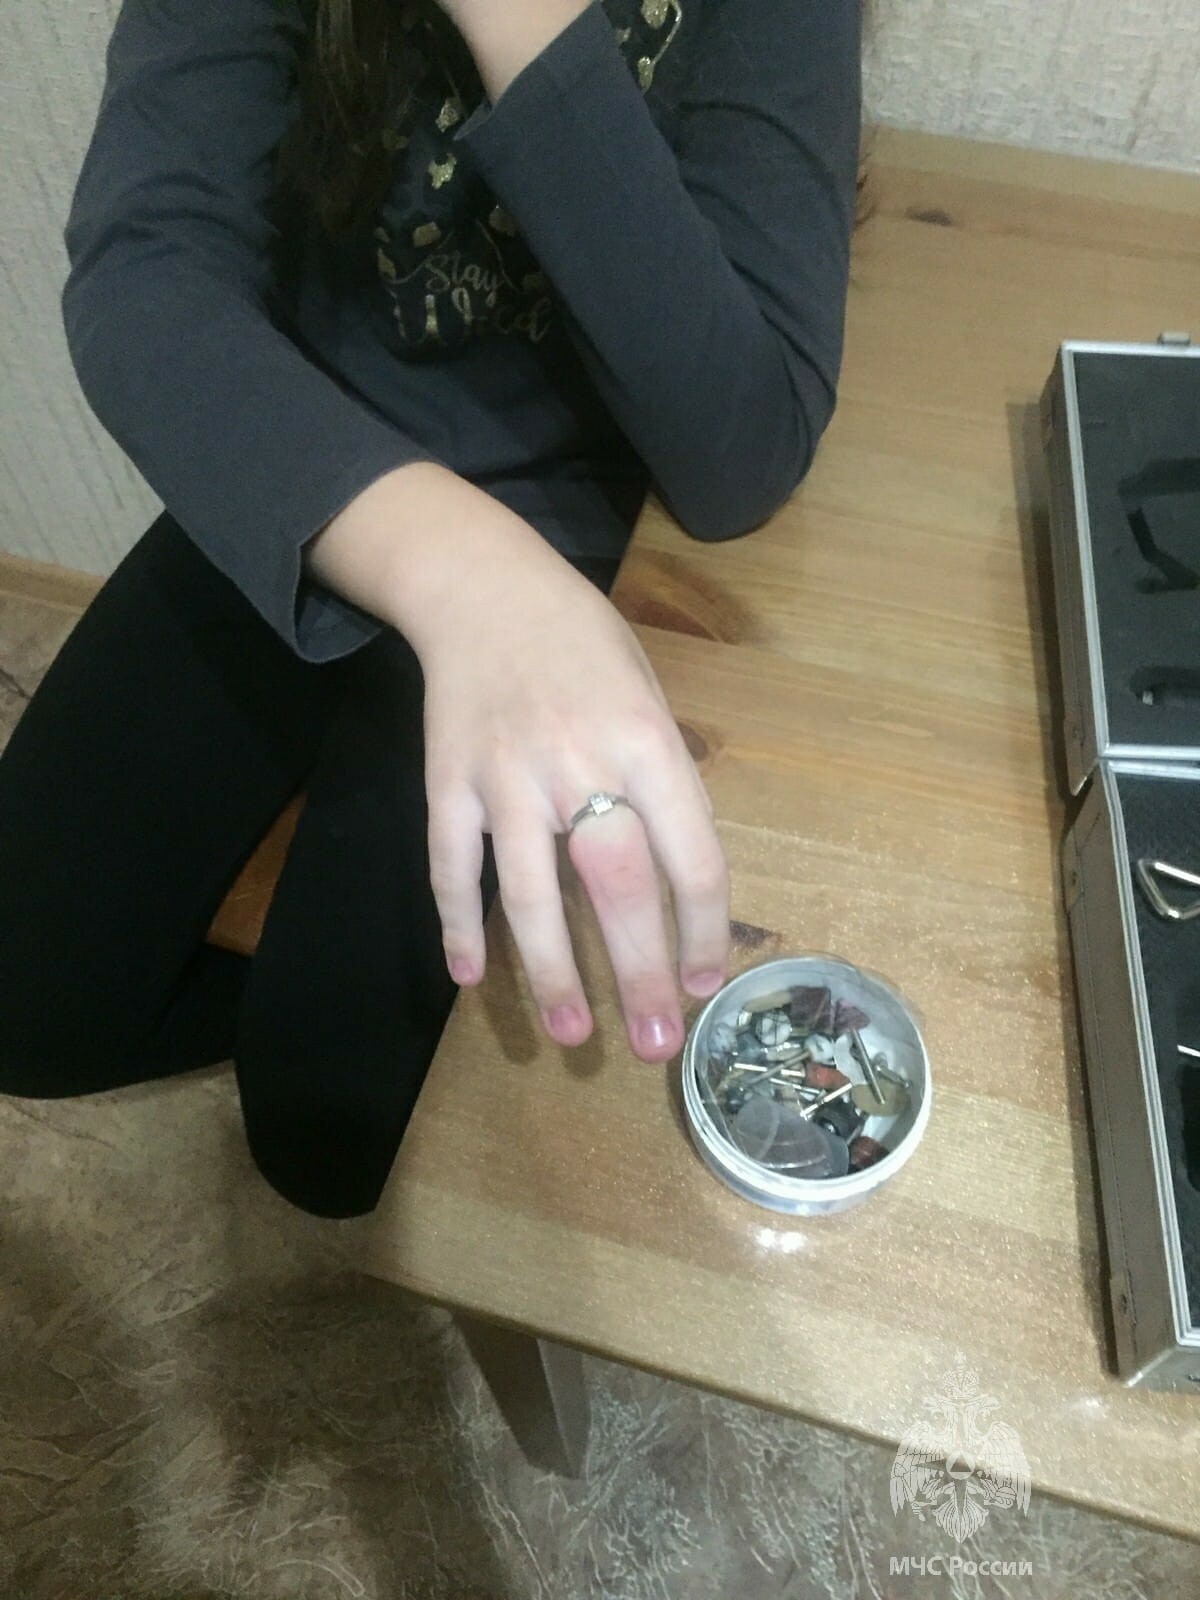 В Казани спасатели помогли снять с пальца девочки застрявшее кольцо